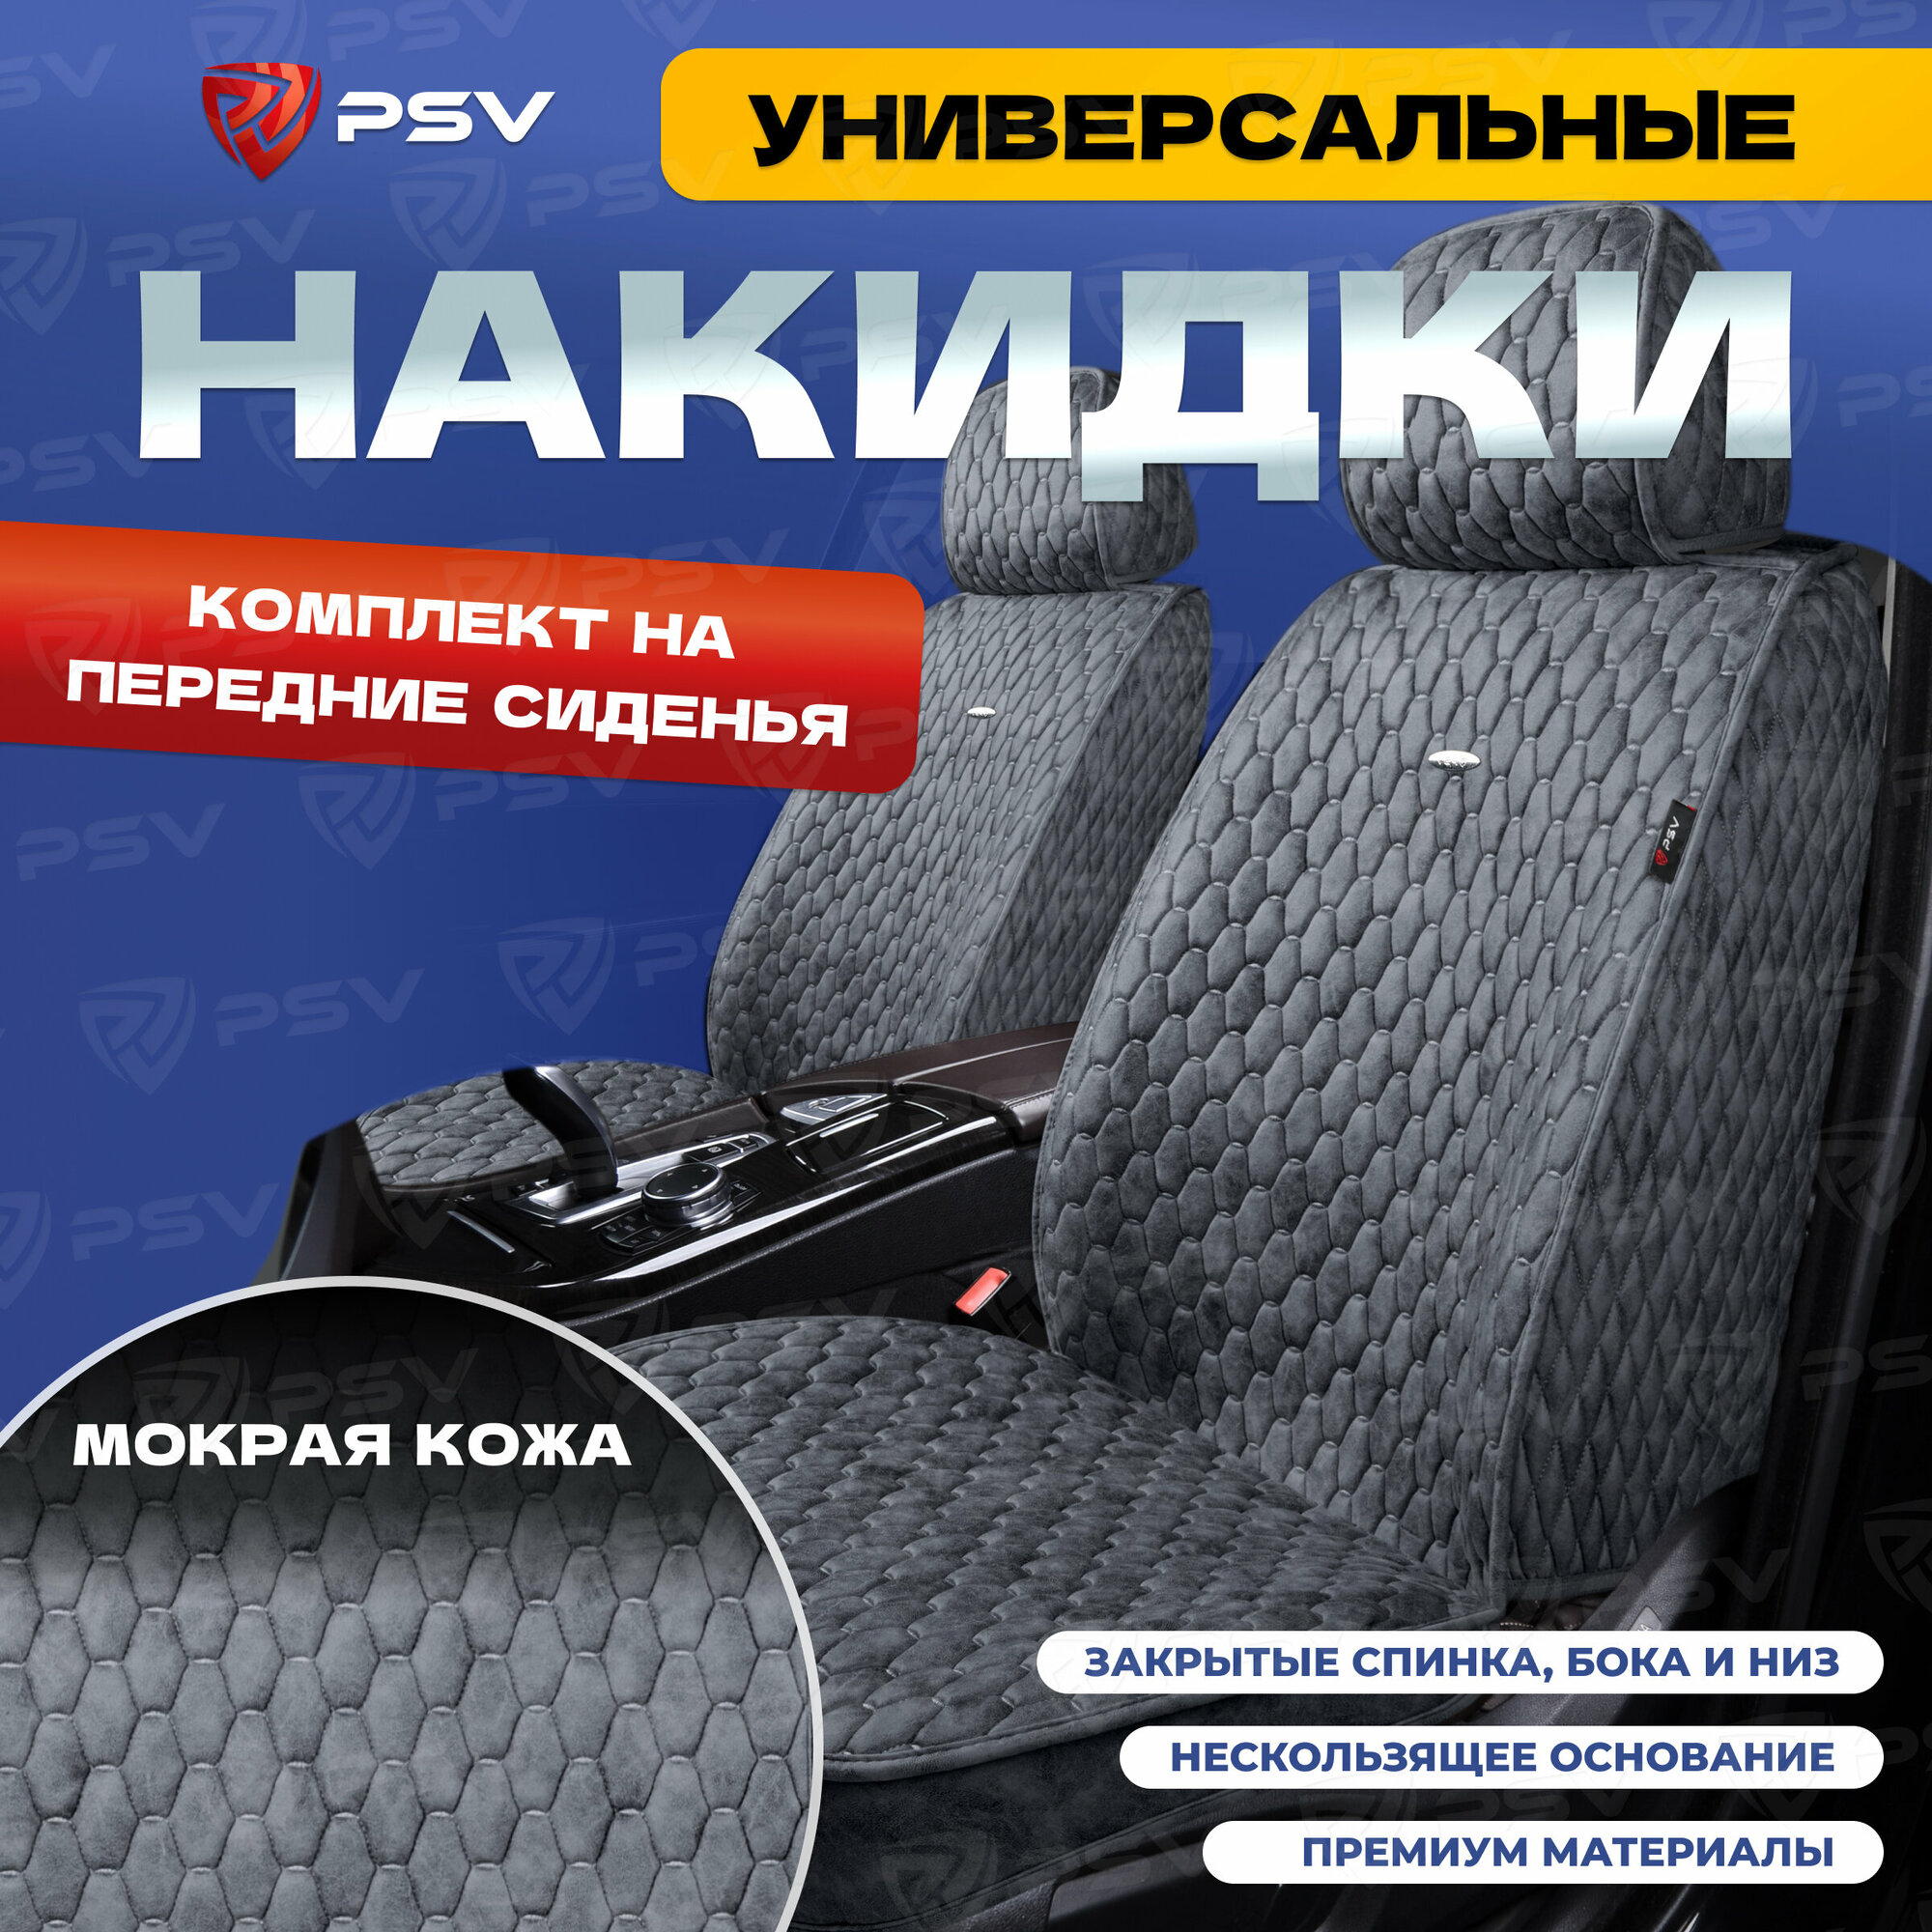 Накидки-чехлы универсальные в машину PSV Skin (Бежевый) комплект на весь салон мокрая кожа